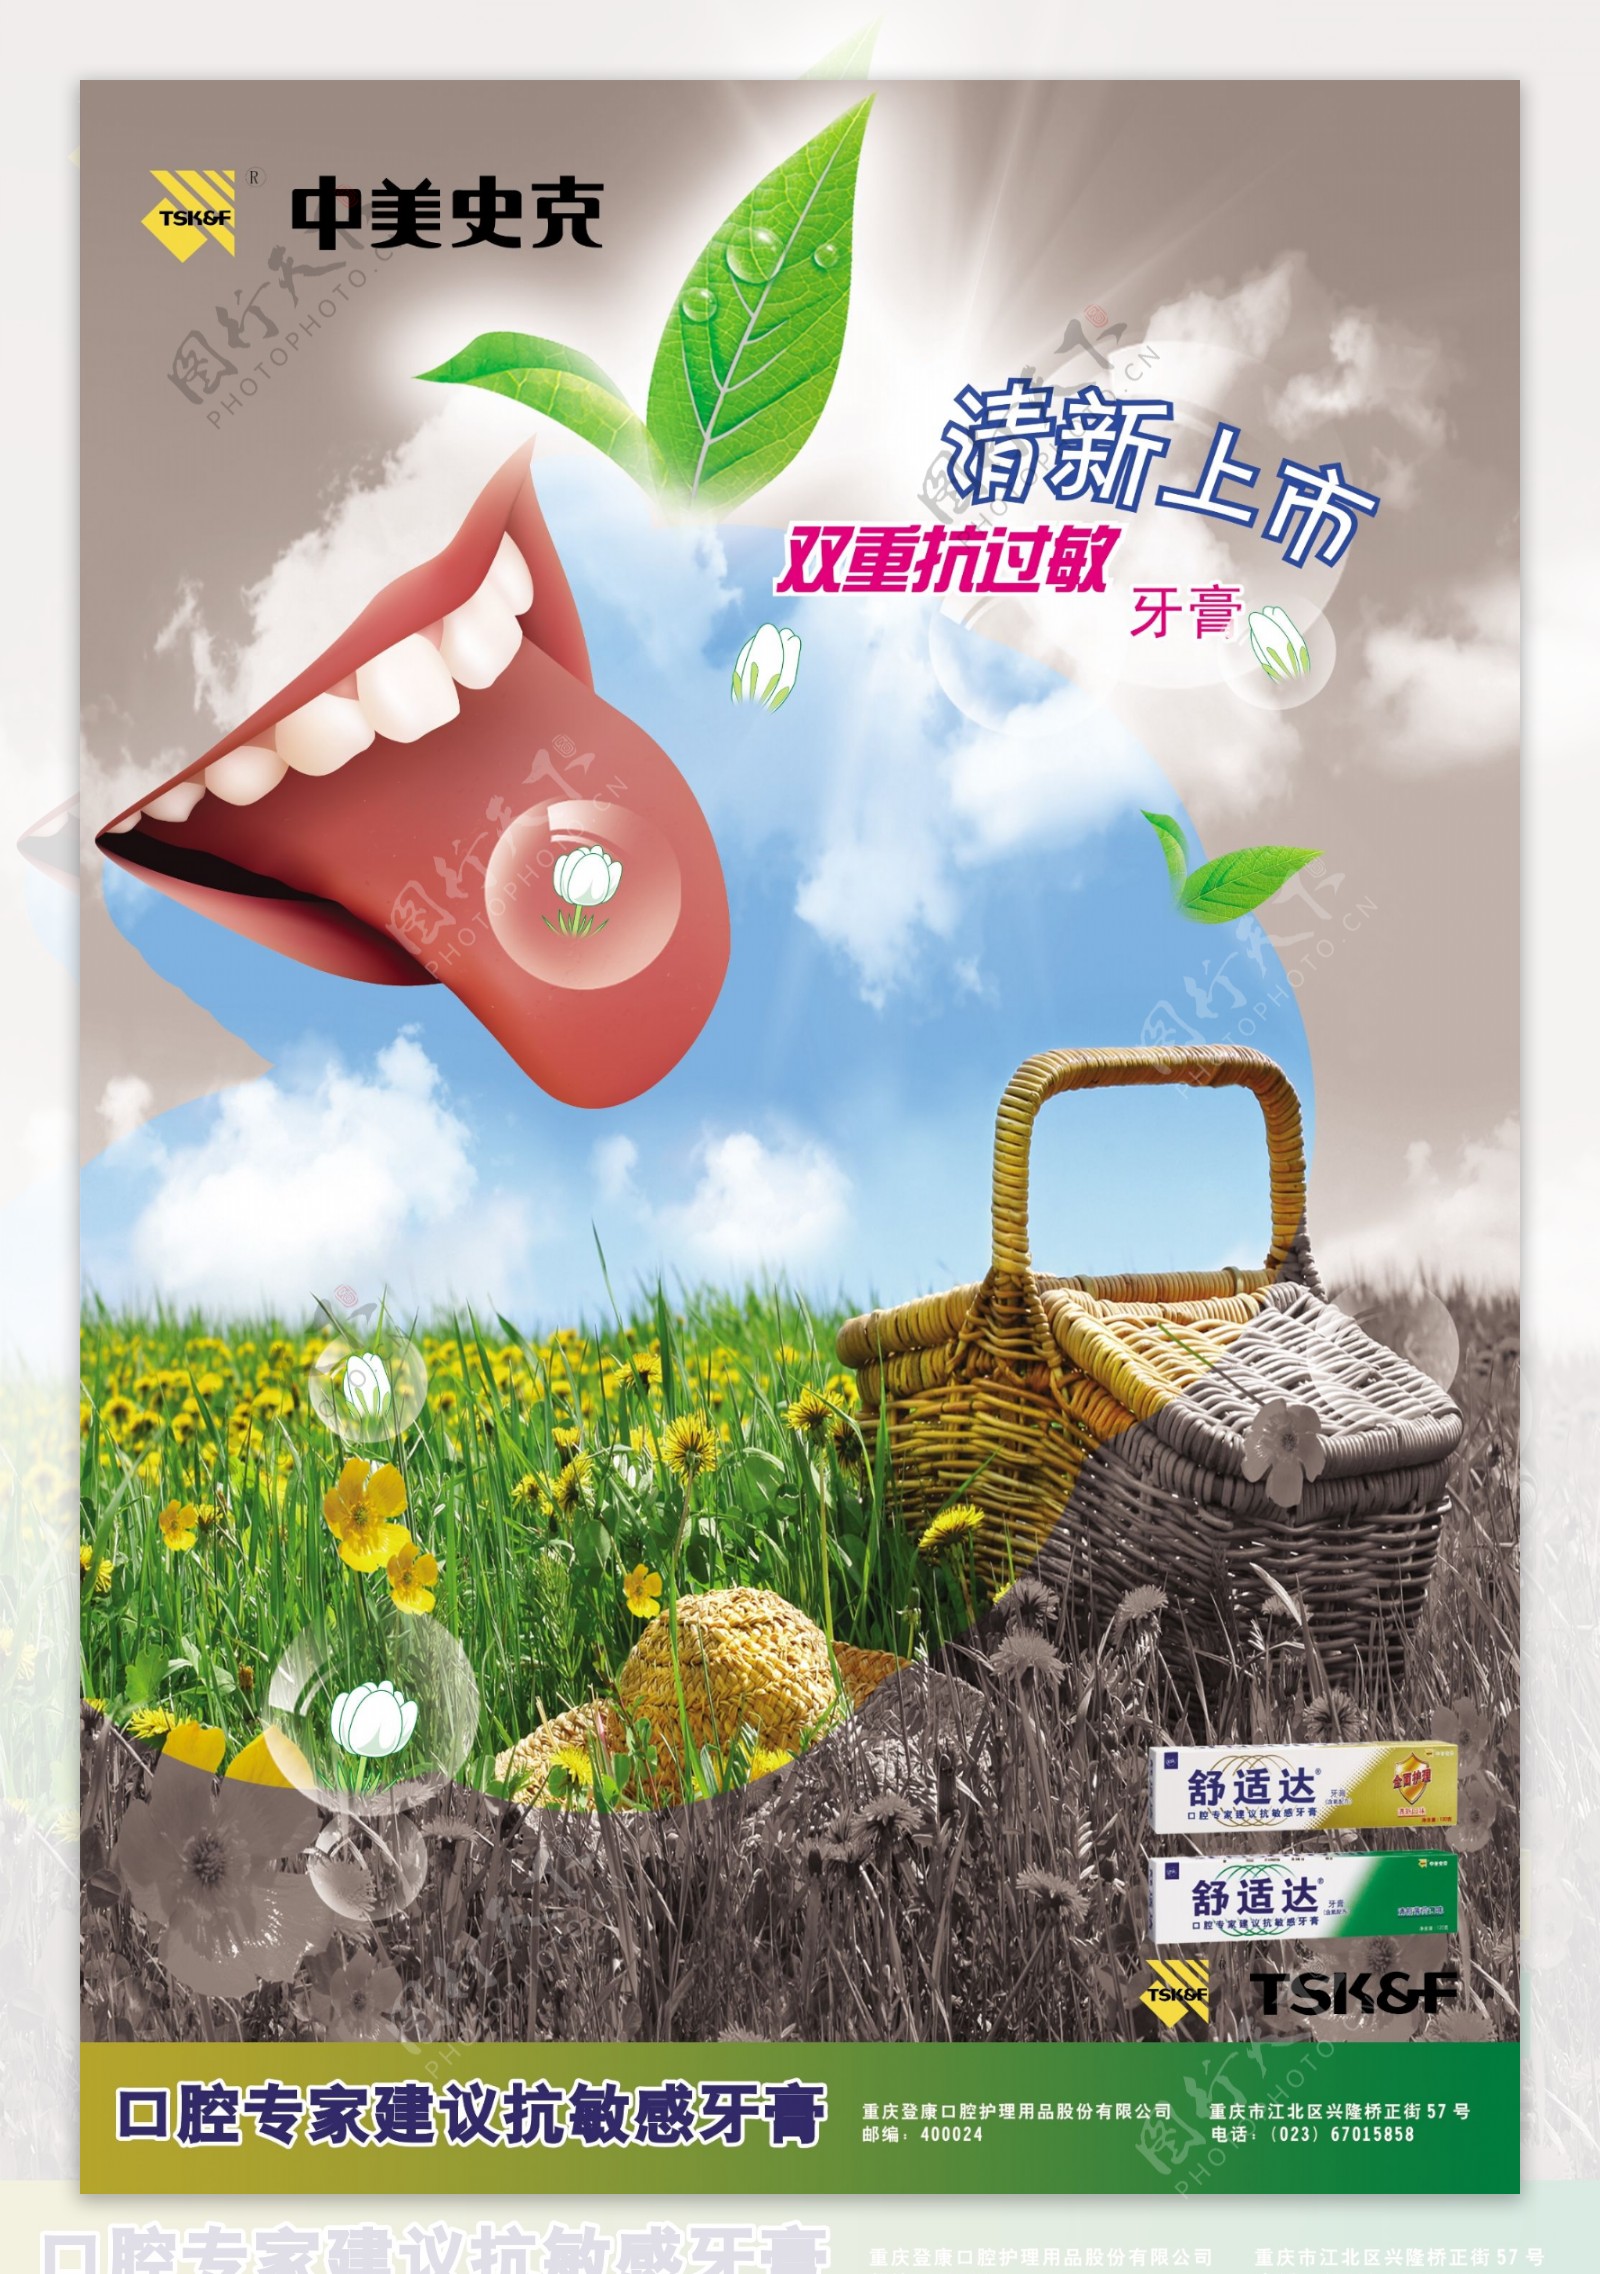 中美史克舒克达药膏宣传海报